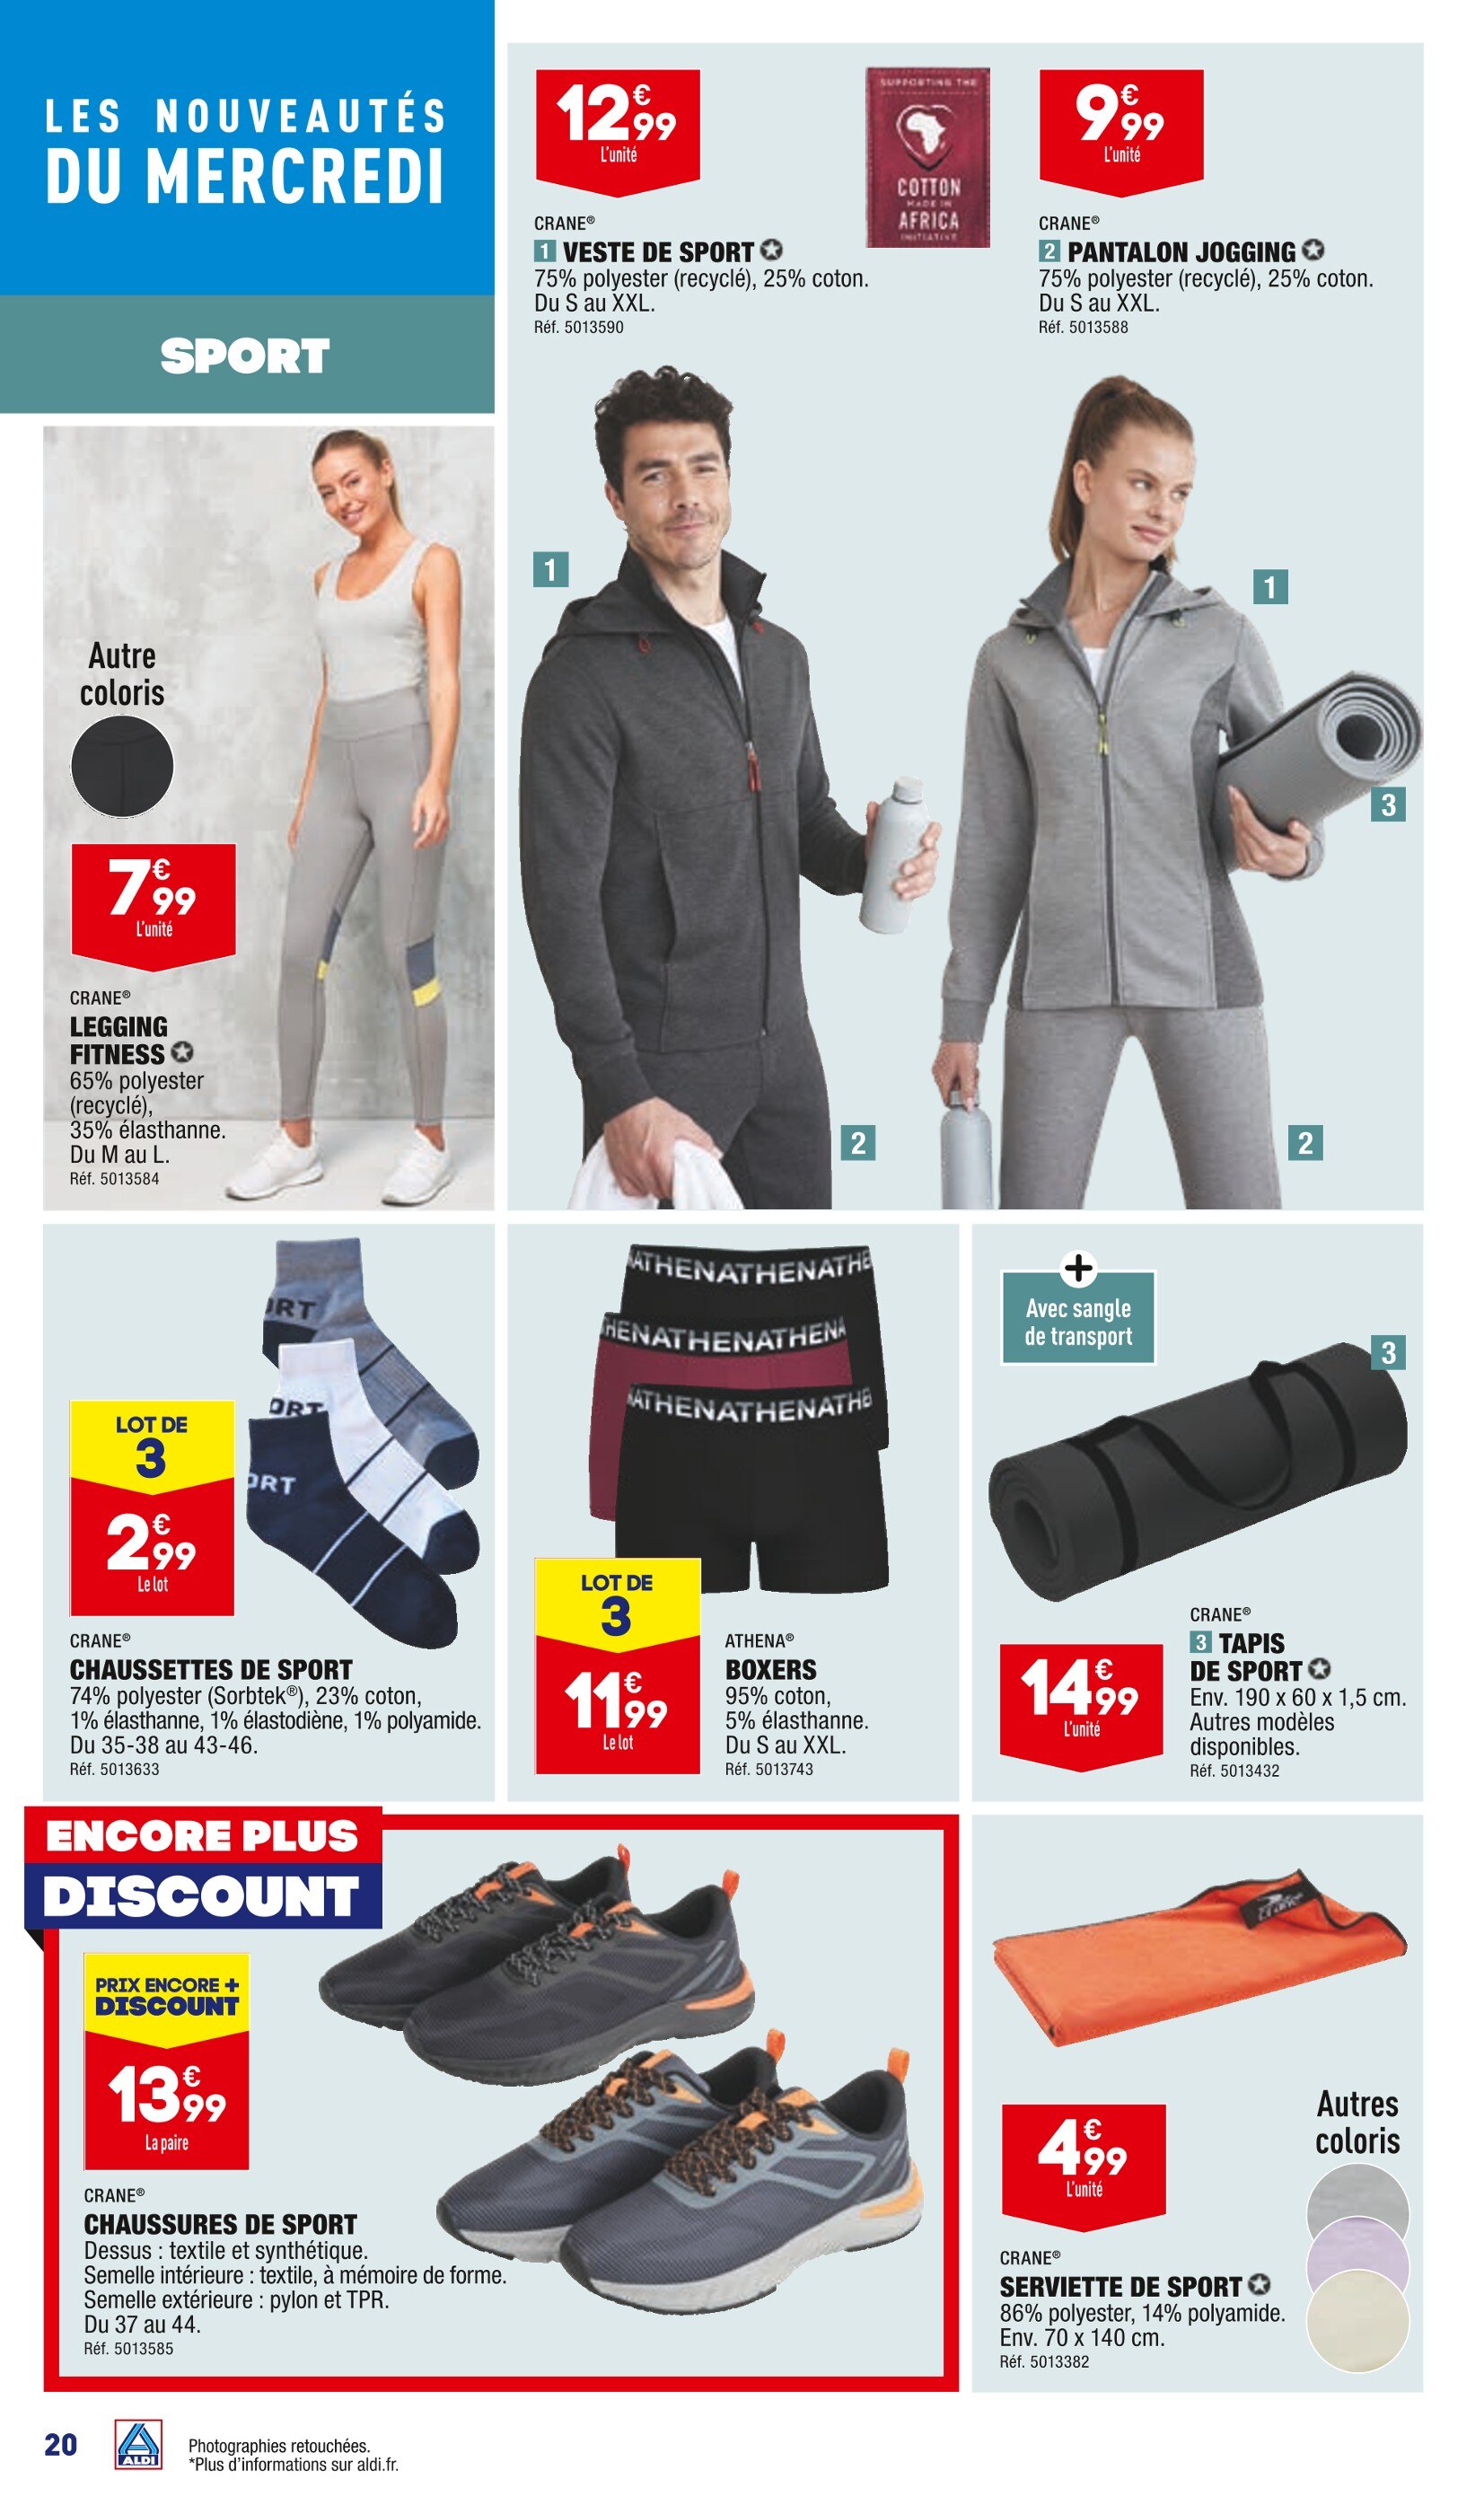 Promo Puma mini socquettes ou chaussettes homme chez Auchan